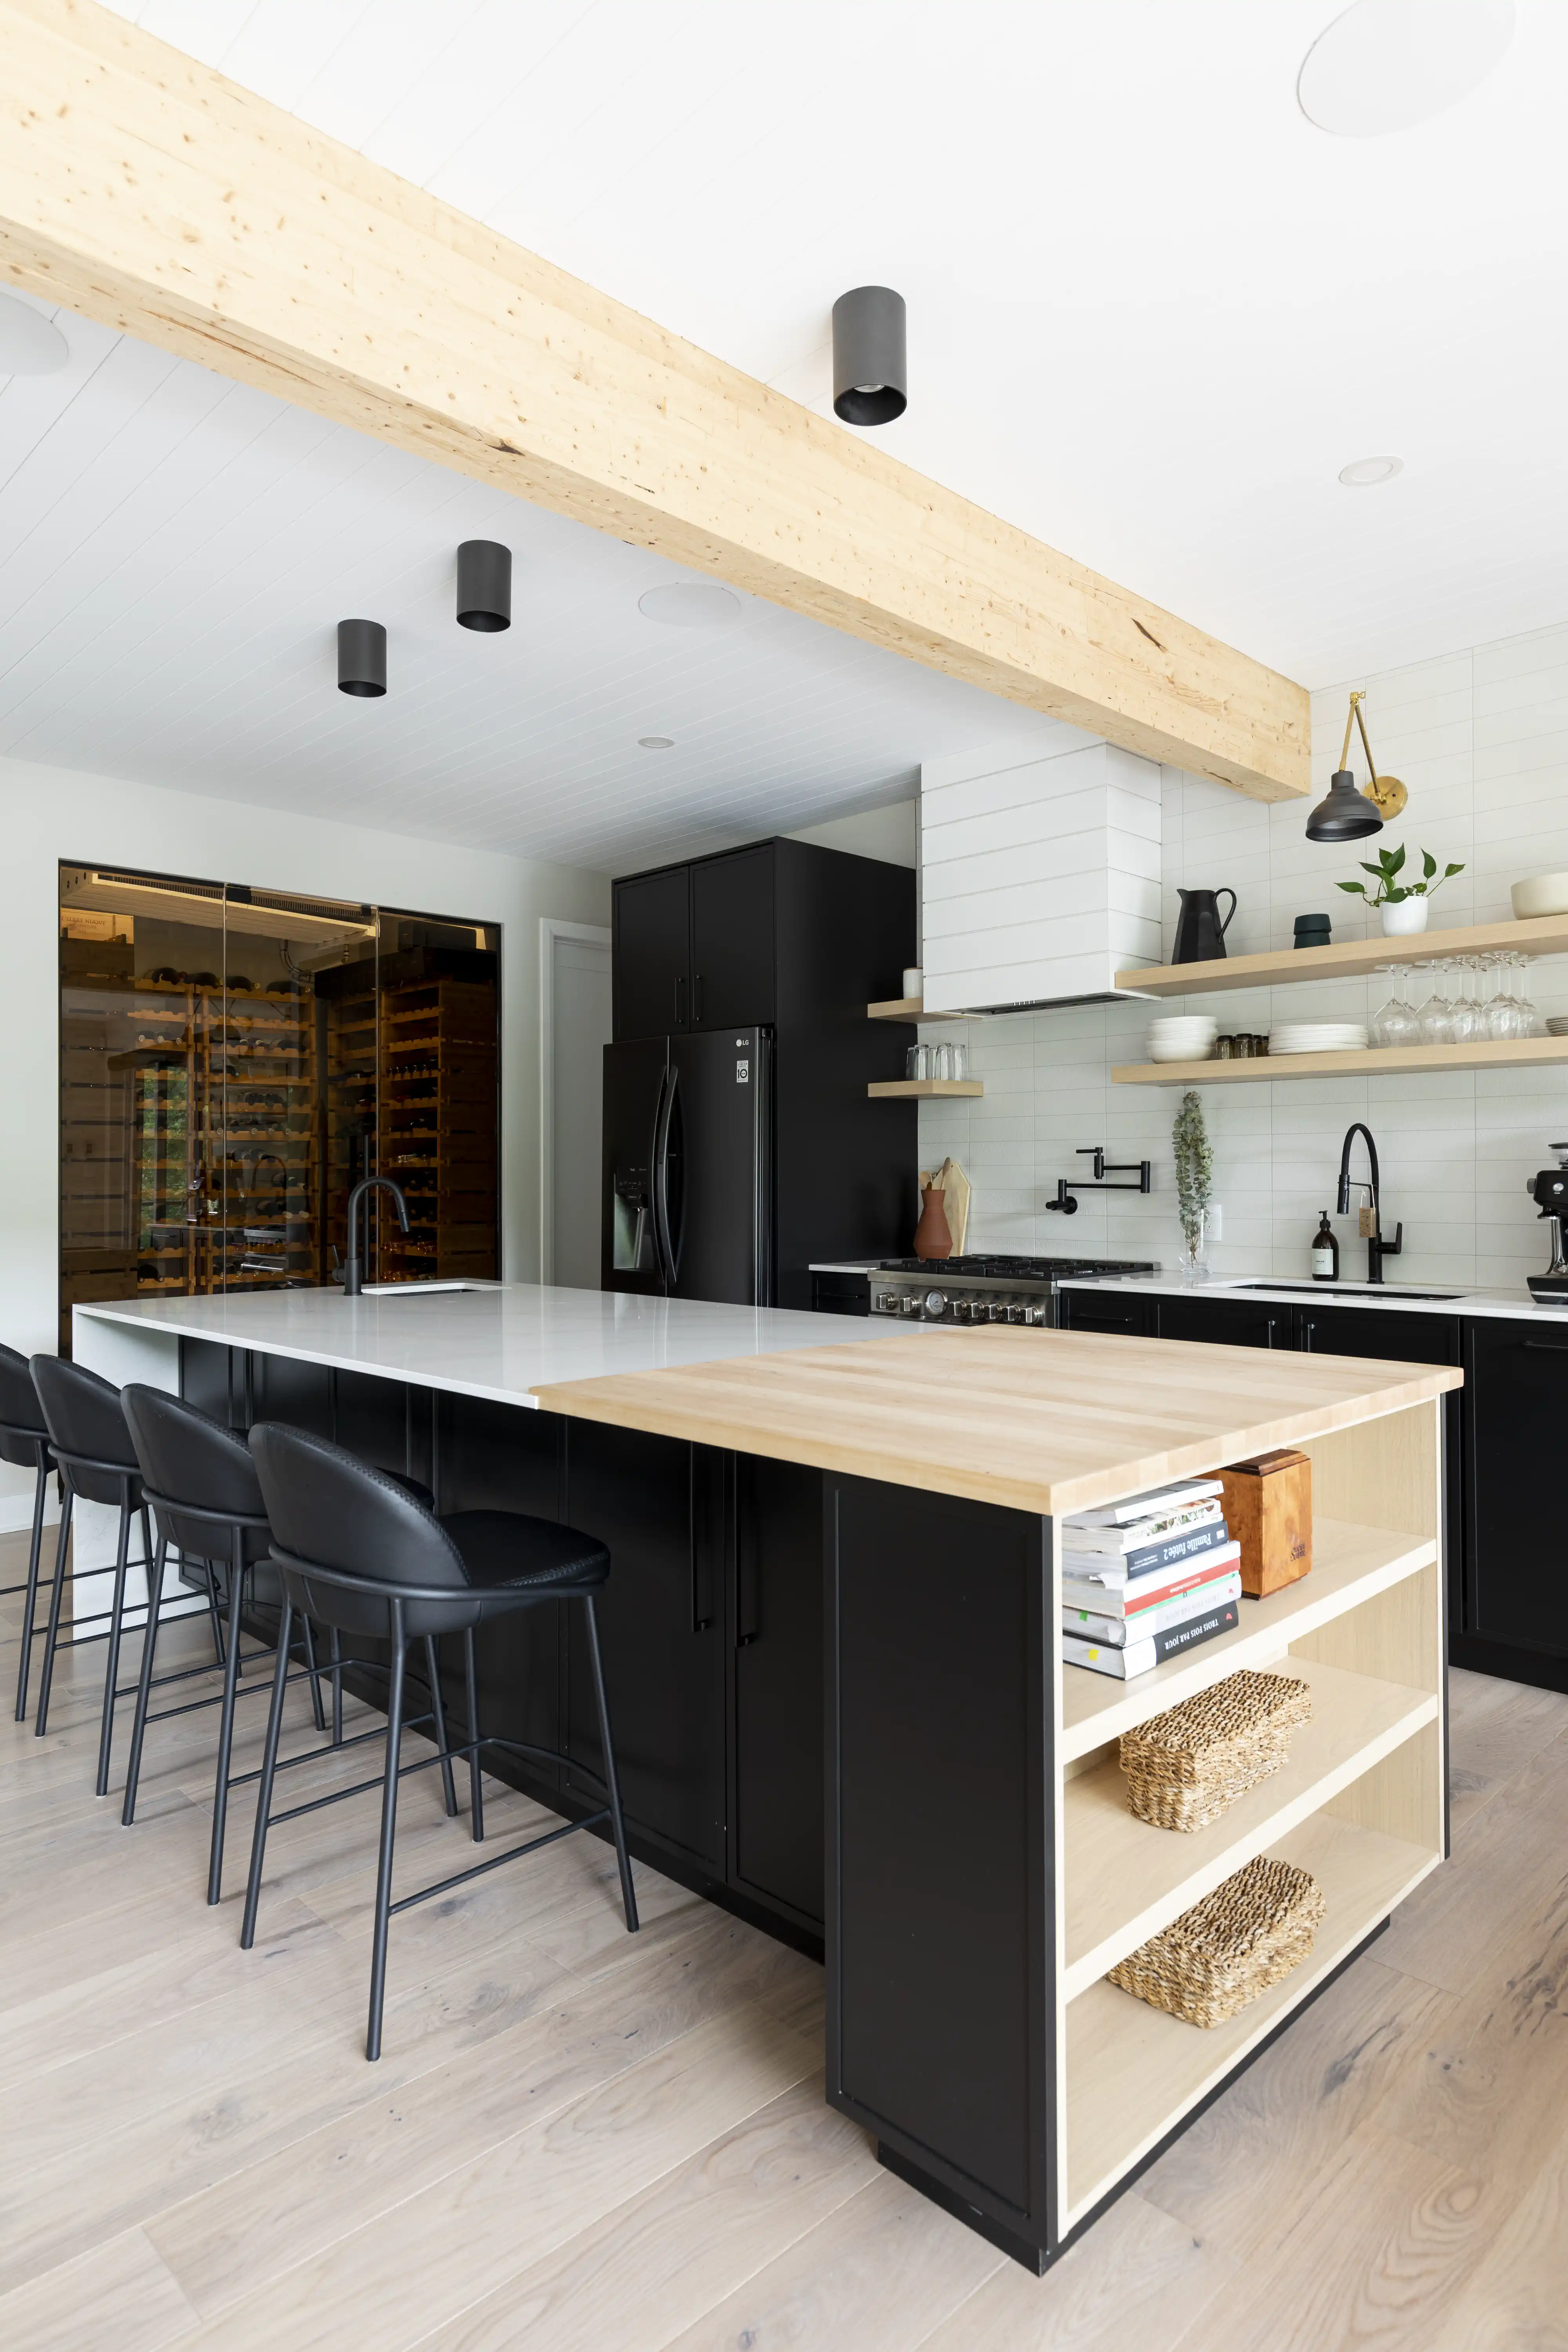 Une cuisine moderne avec un îlot en bois et des appareils noirs, intérieur signé Sarah Brown Design